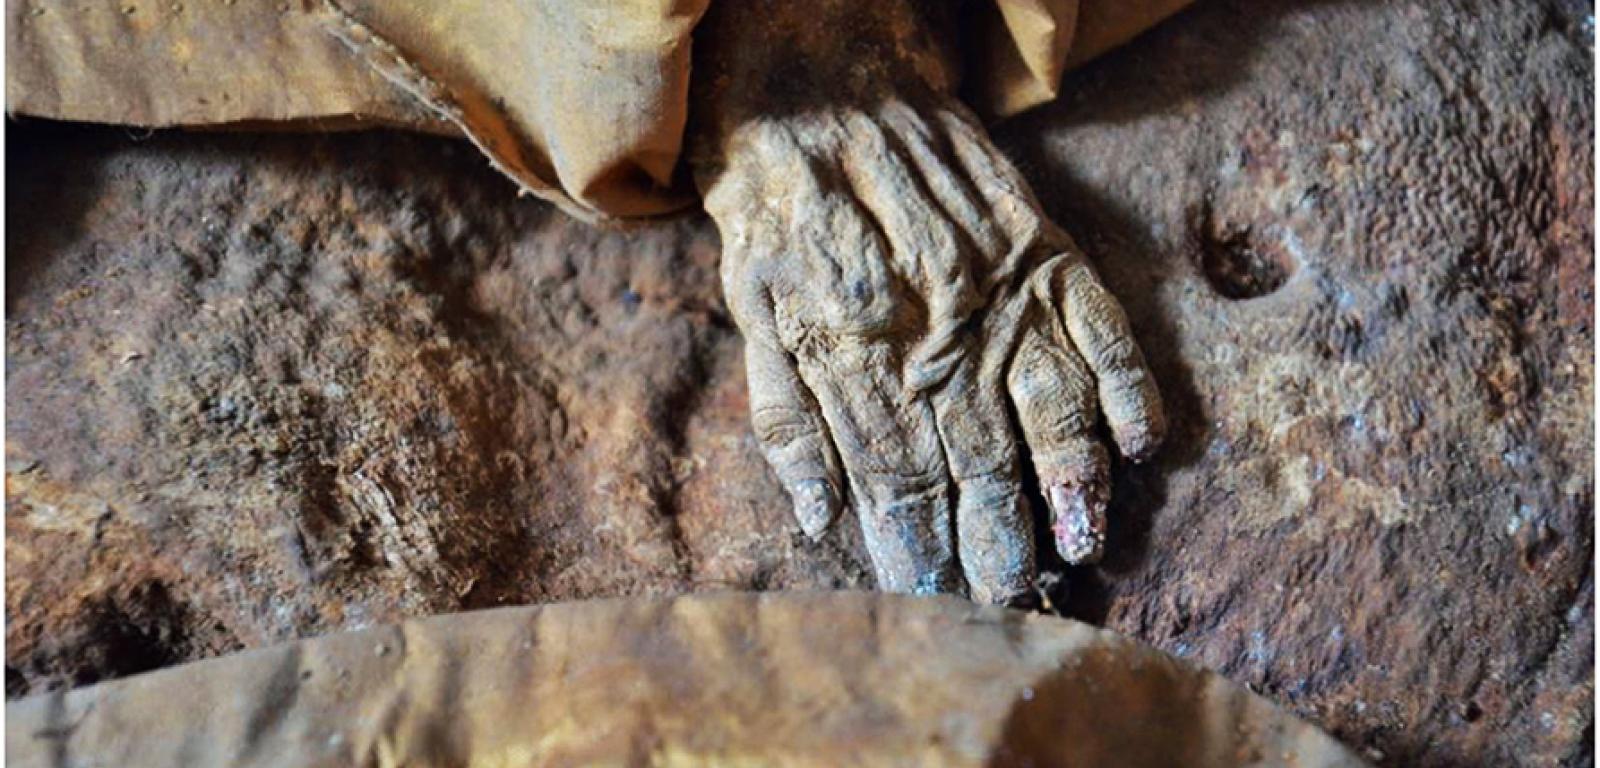 Doskonale zachowana naturalna mumia, owinięta w jedwabny płaszcz z kapturem, znajdowała się w nieoznakowanej trumnie w rodzinnej krypcie Starhembergów.